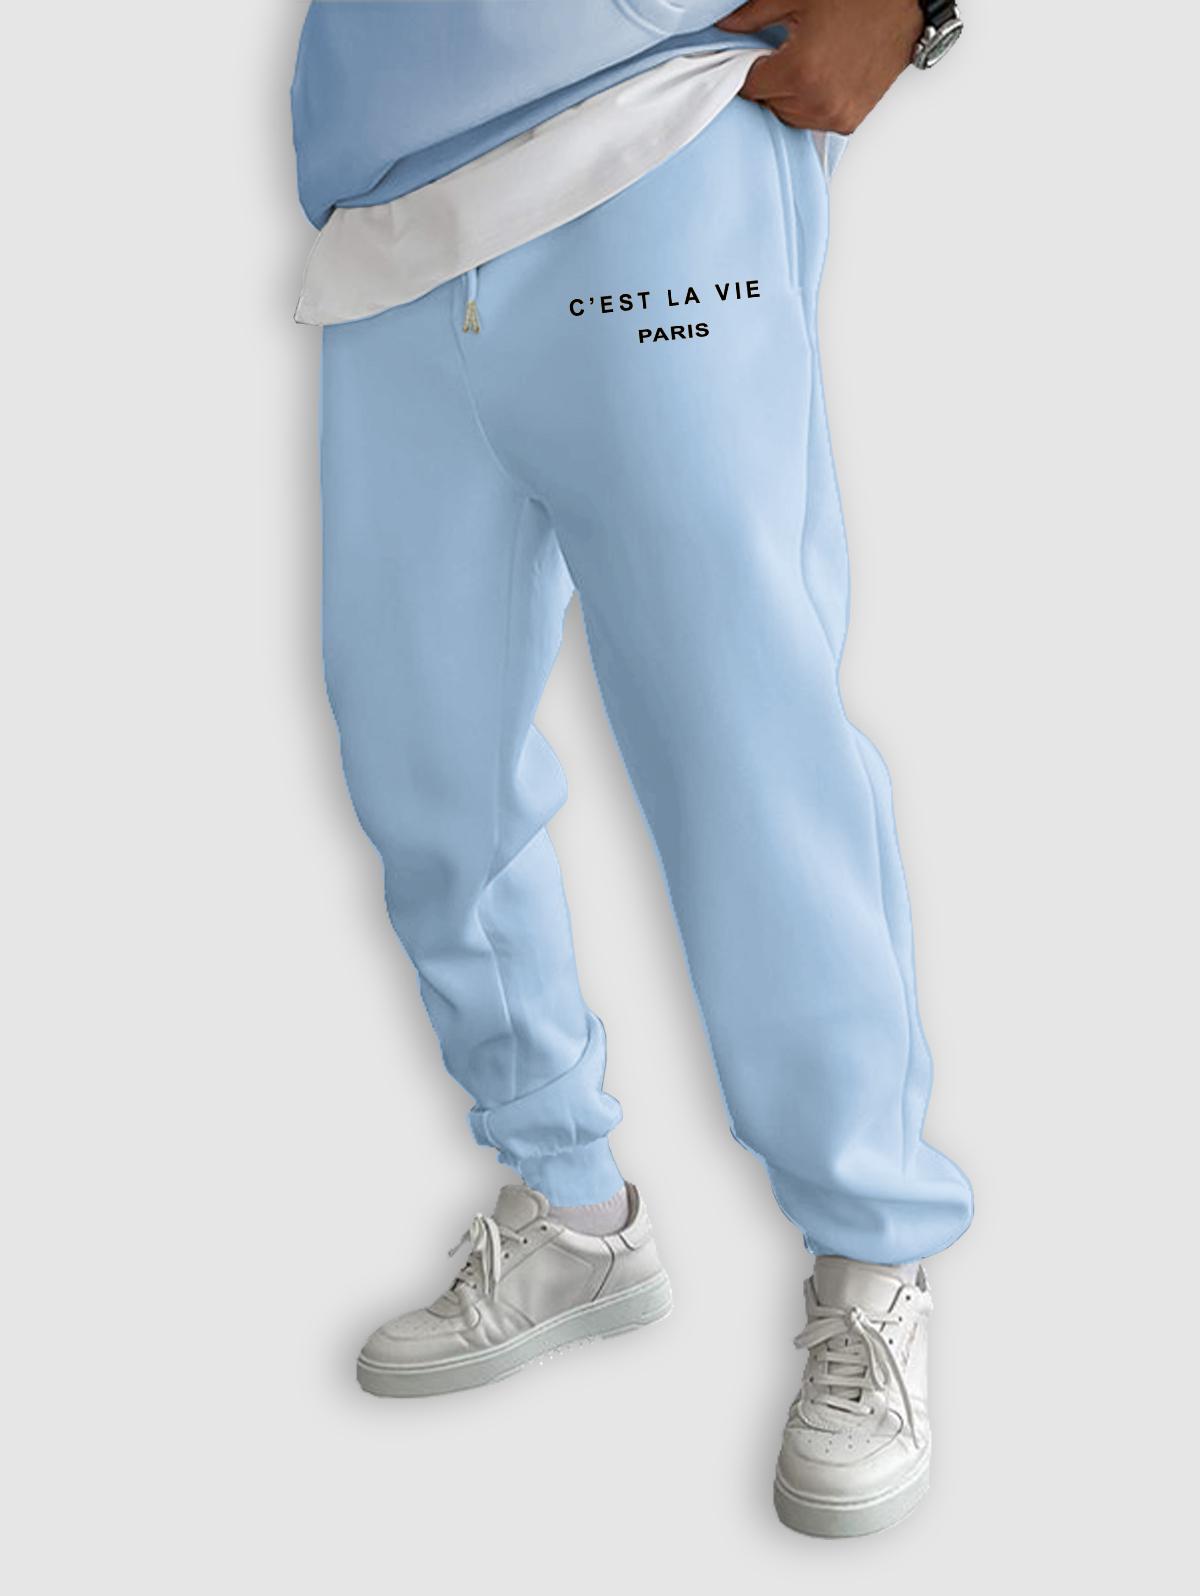 ZAFUL Men's C'EST LA VIE PARIS Letter Printed Drawstring Fleece-lined Sports Jogger Pants L Light blue